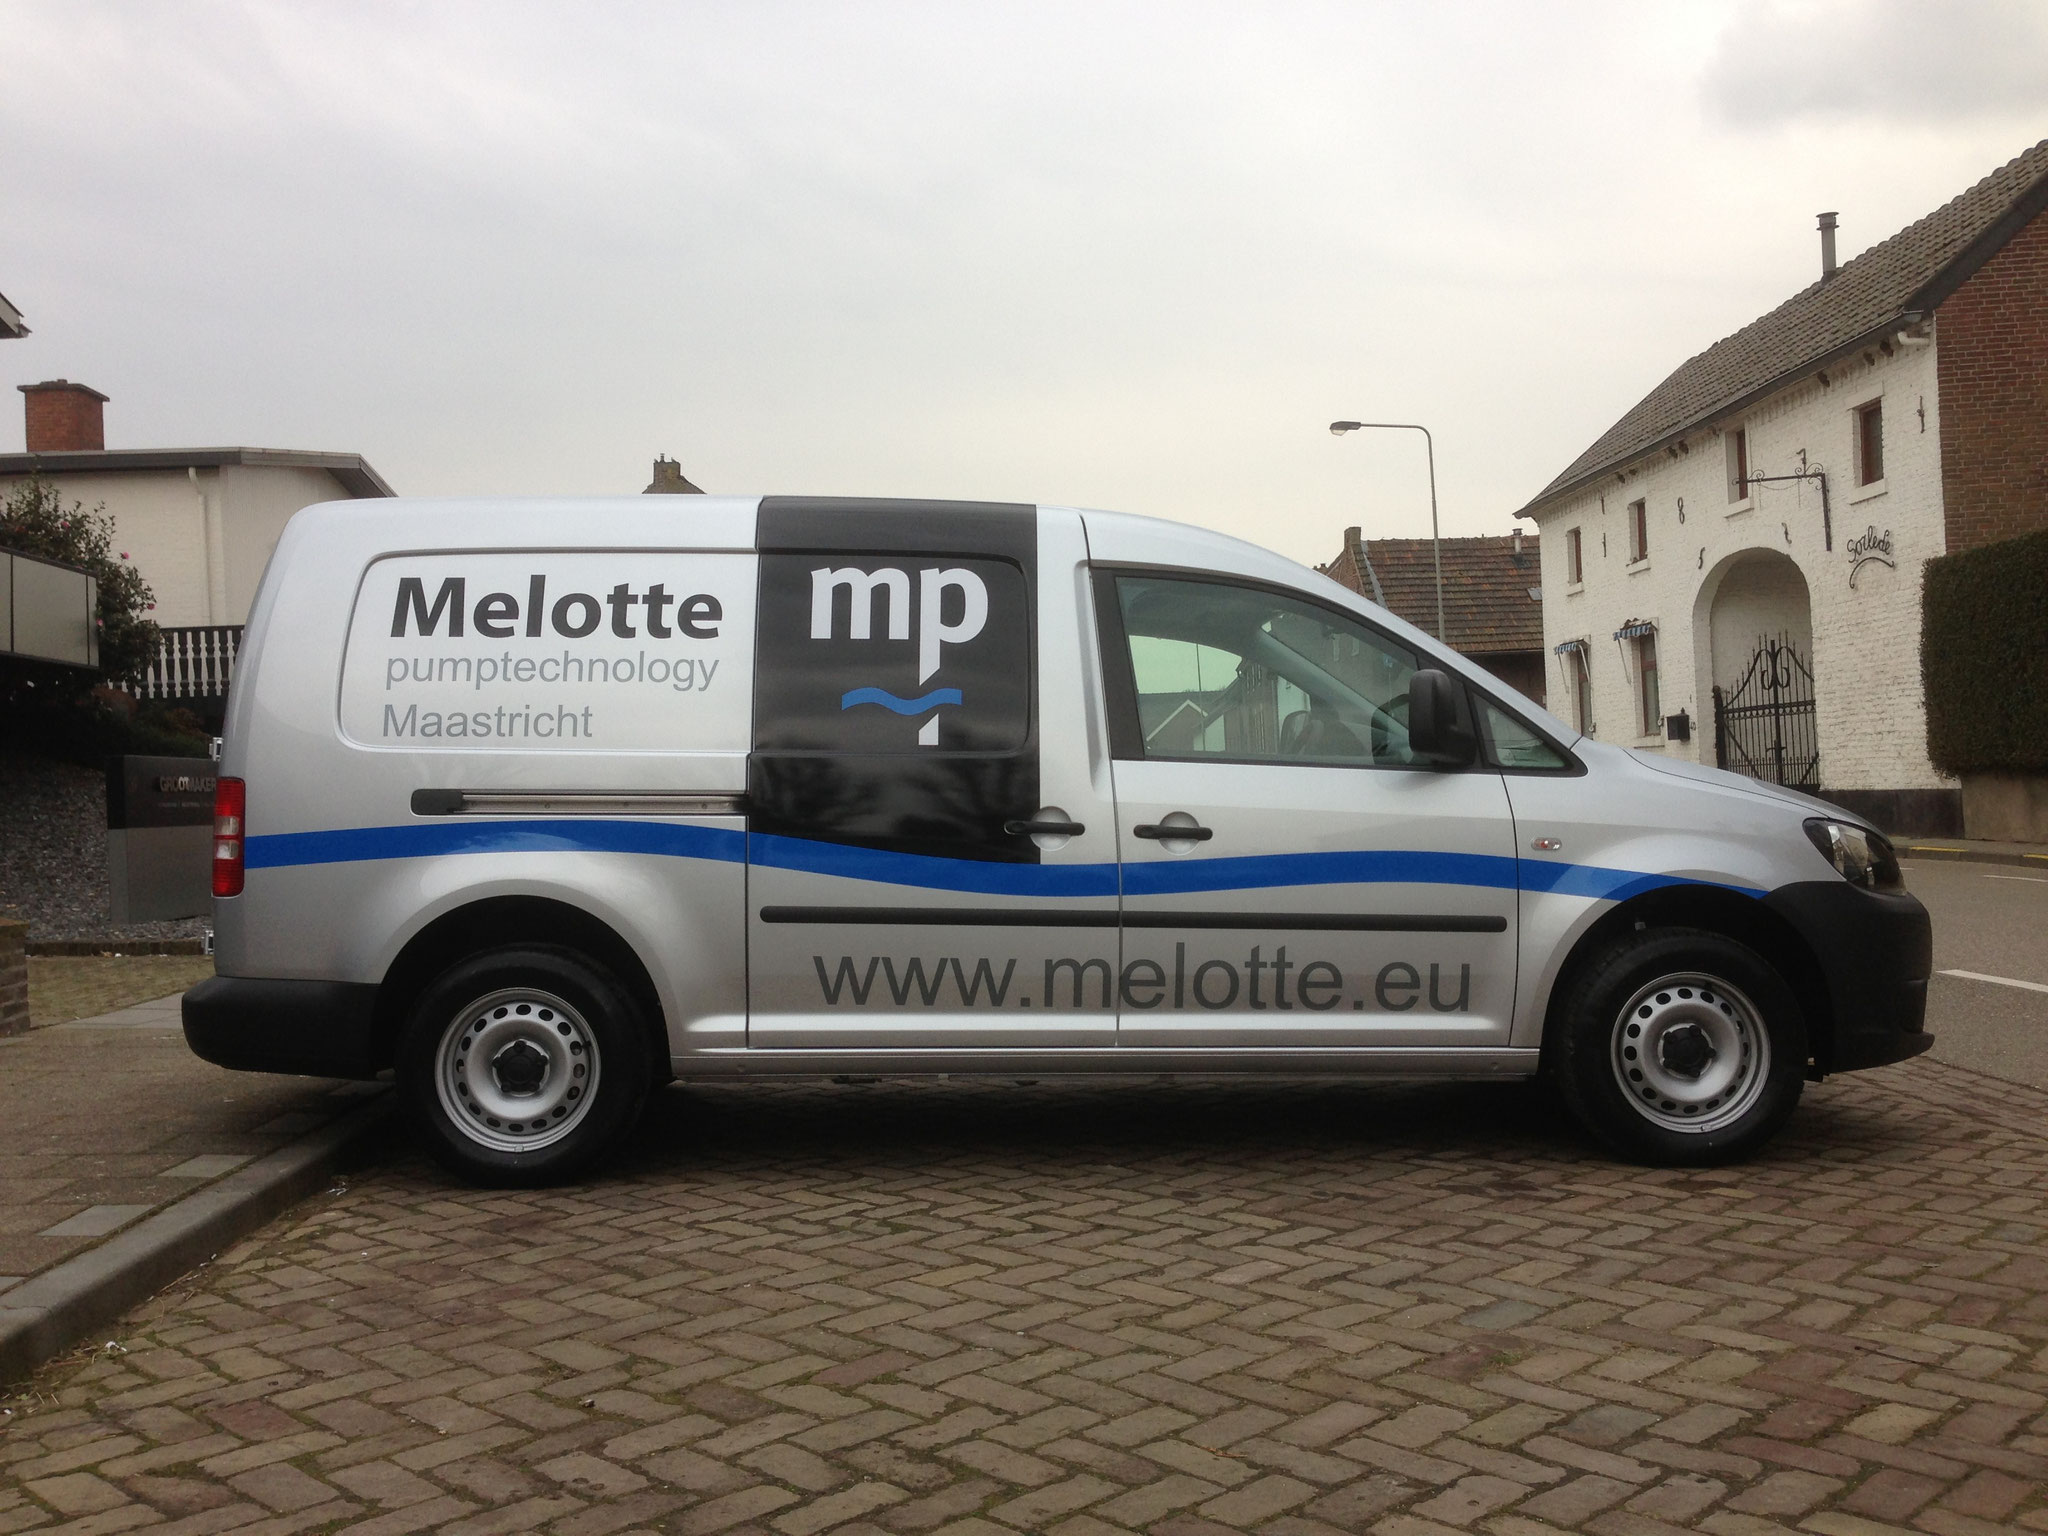 Melotte Maastricht